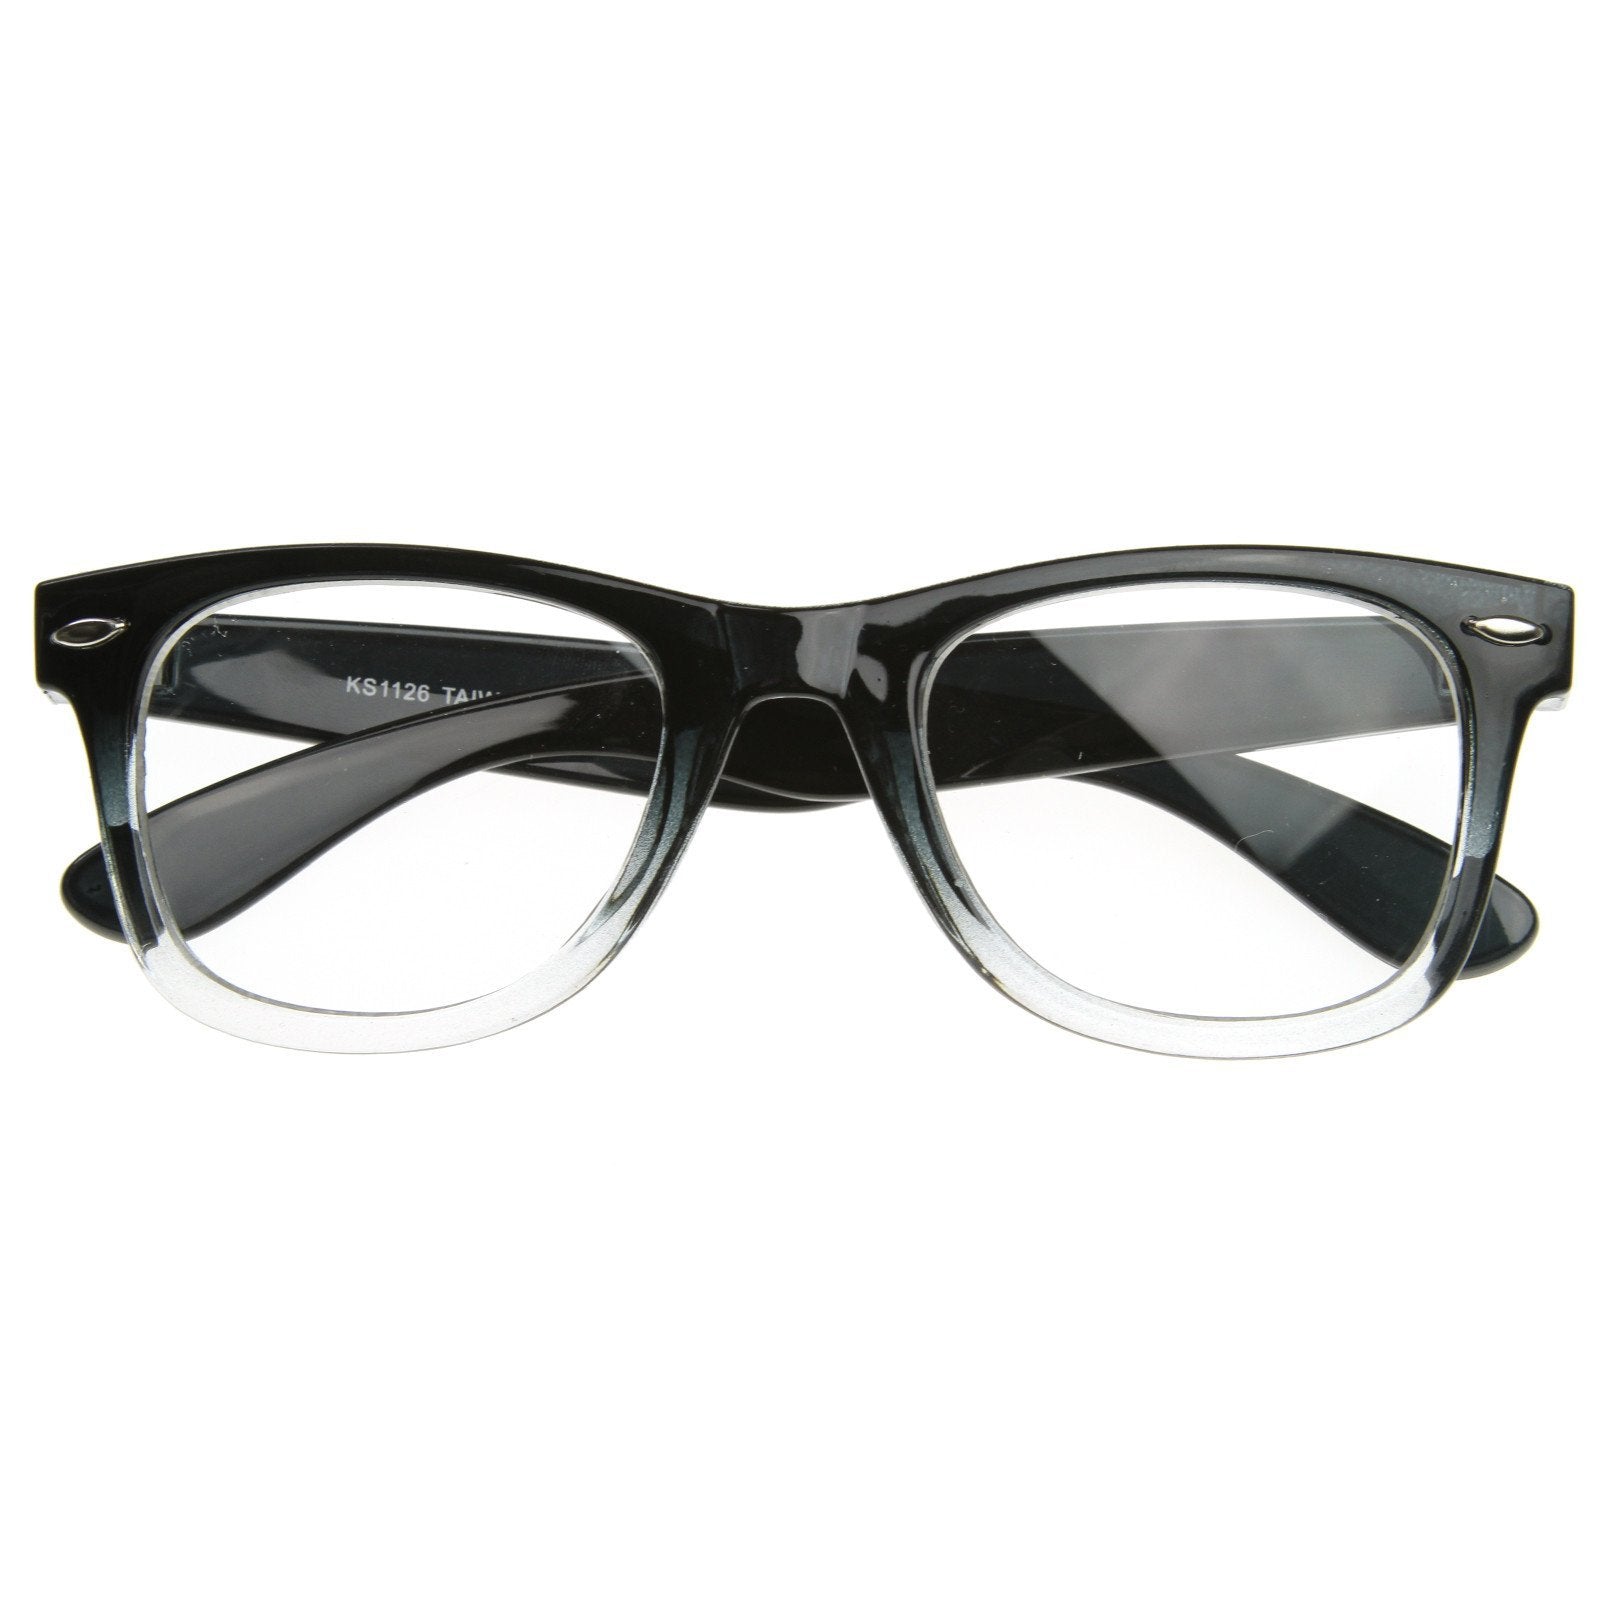 Pit Viper - The Exec Original Fade – Shades Sunglasses